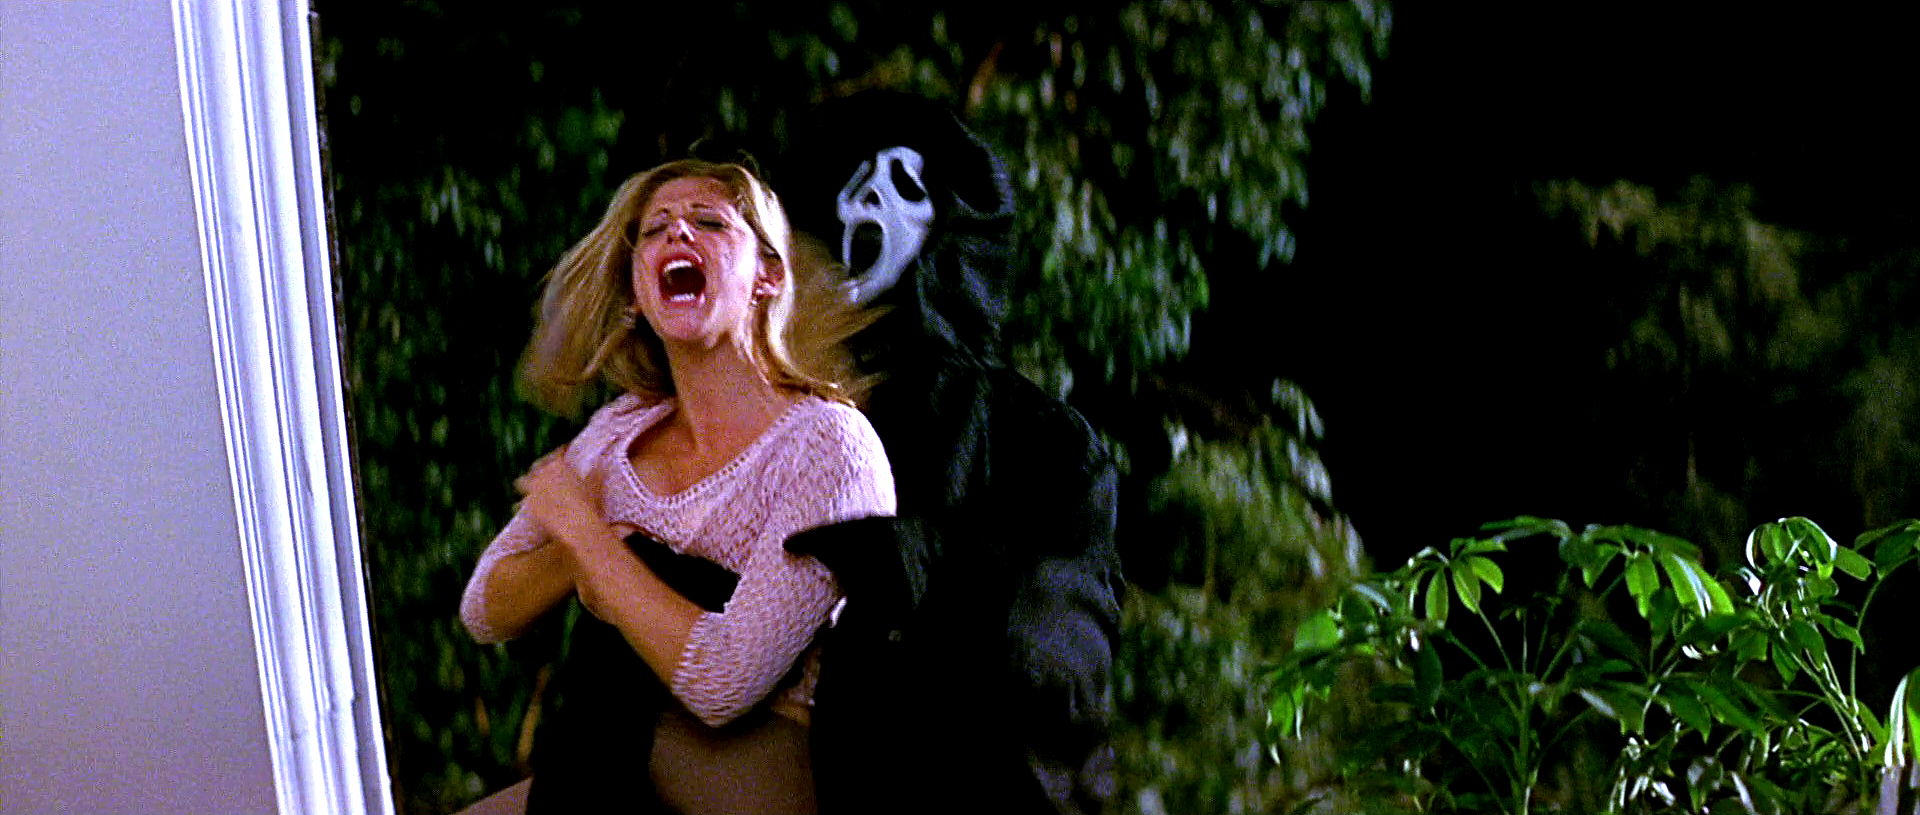 Sarah Michelle Gellar in Scream 2